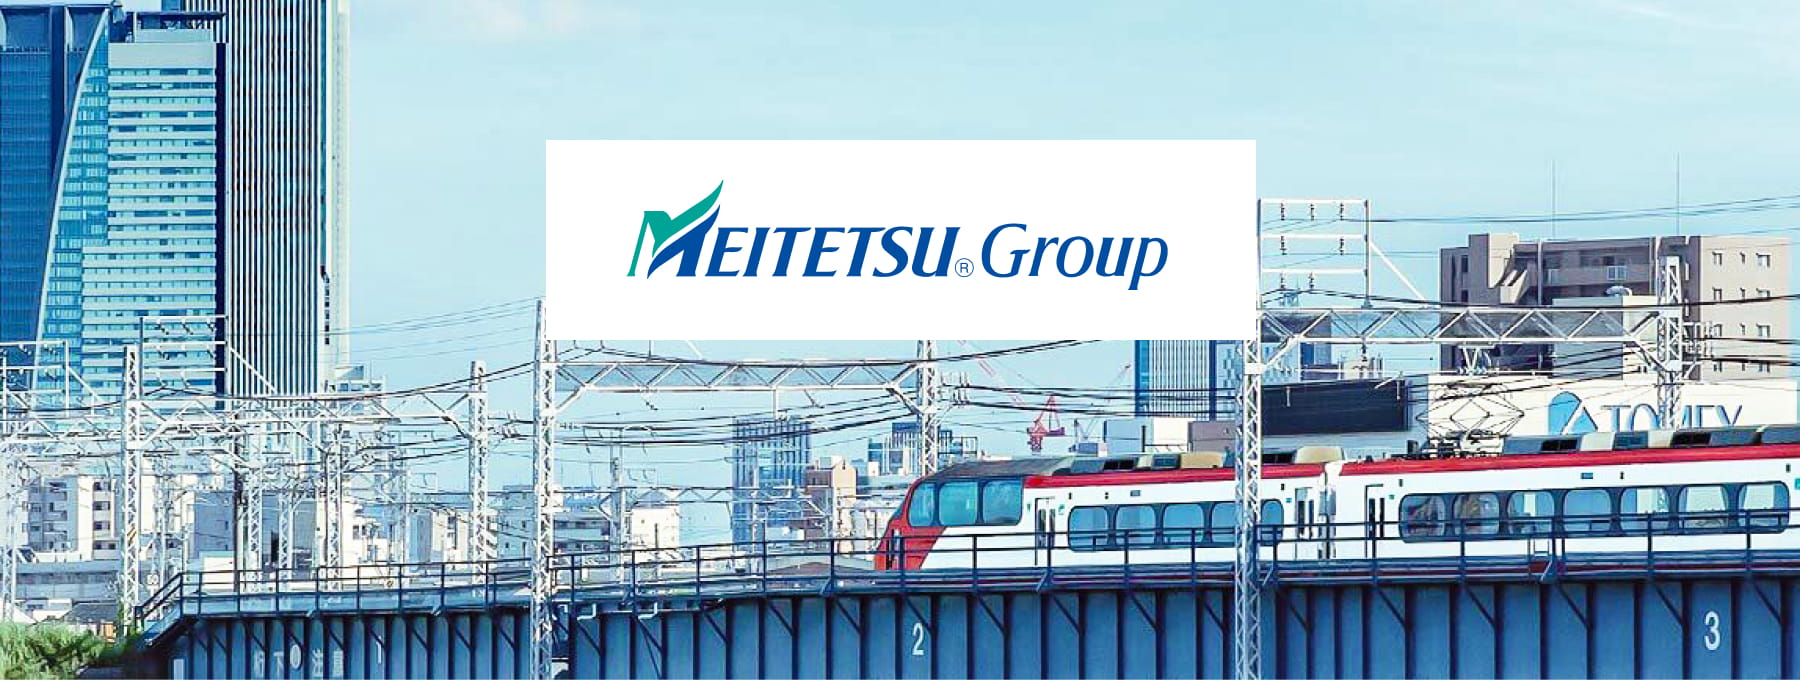 MEITETSU Group